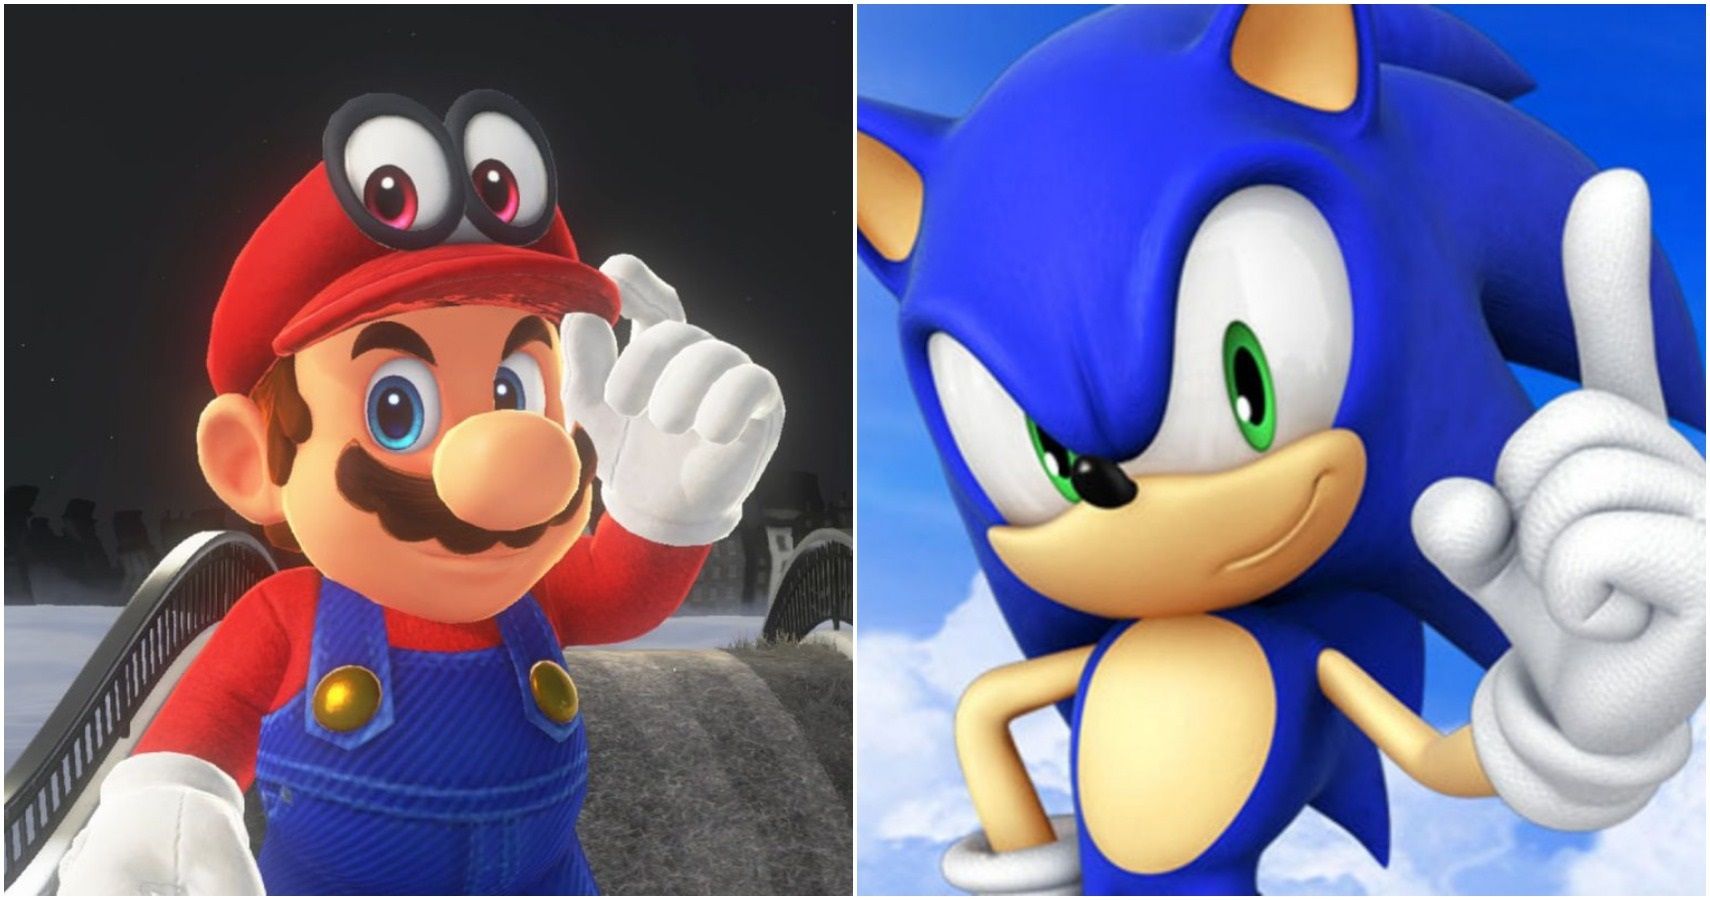 Classic Mario Vs Classic Sonic